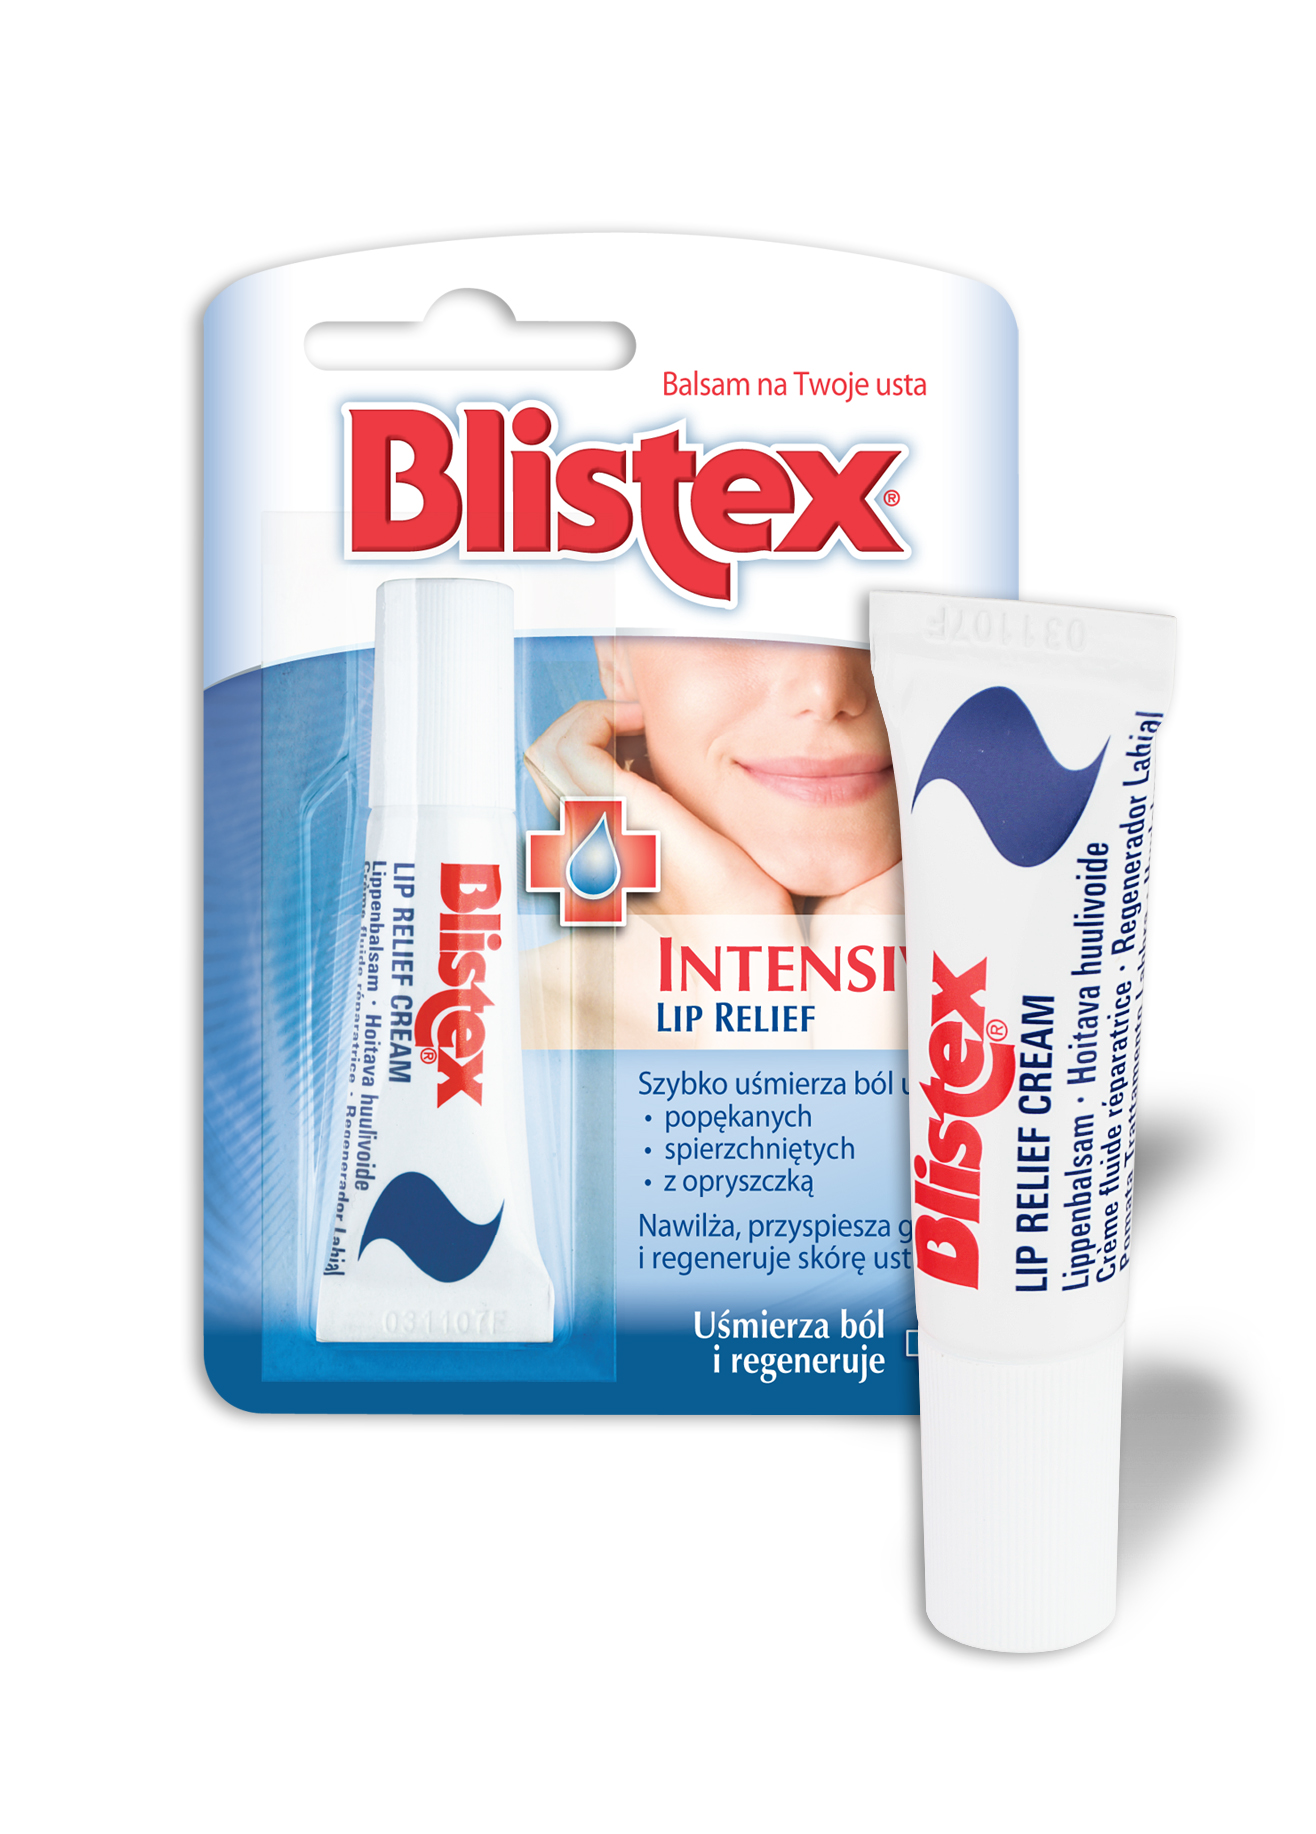 Blistex Intensive Lip Relief 